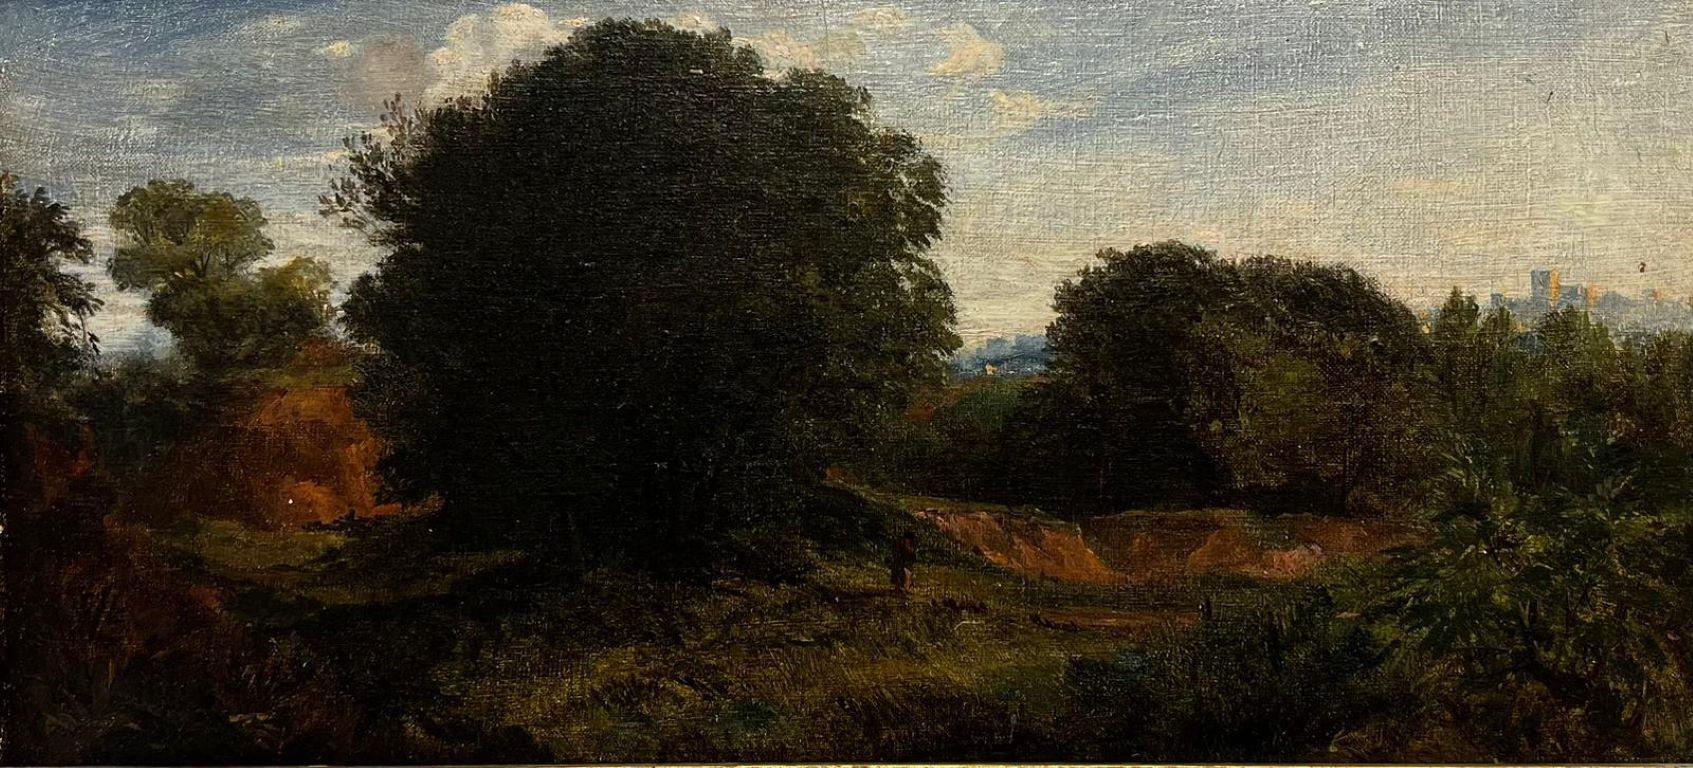 Figure à l'huile anglaise du début des années 1800 dans un paysage boisé rural, original - Painting de circle of John Constable